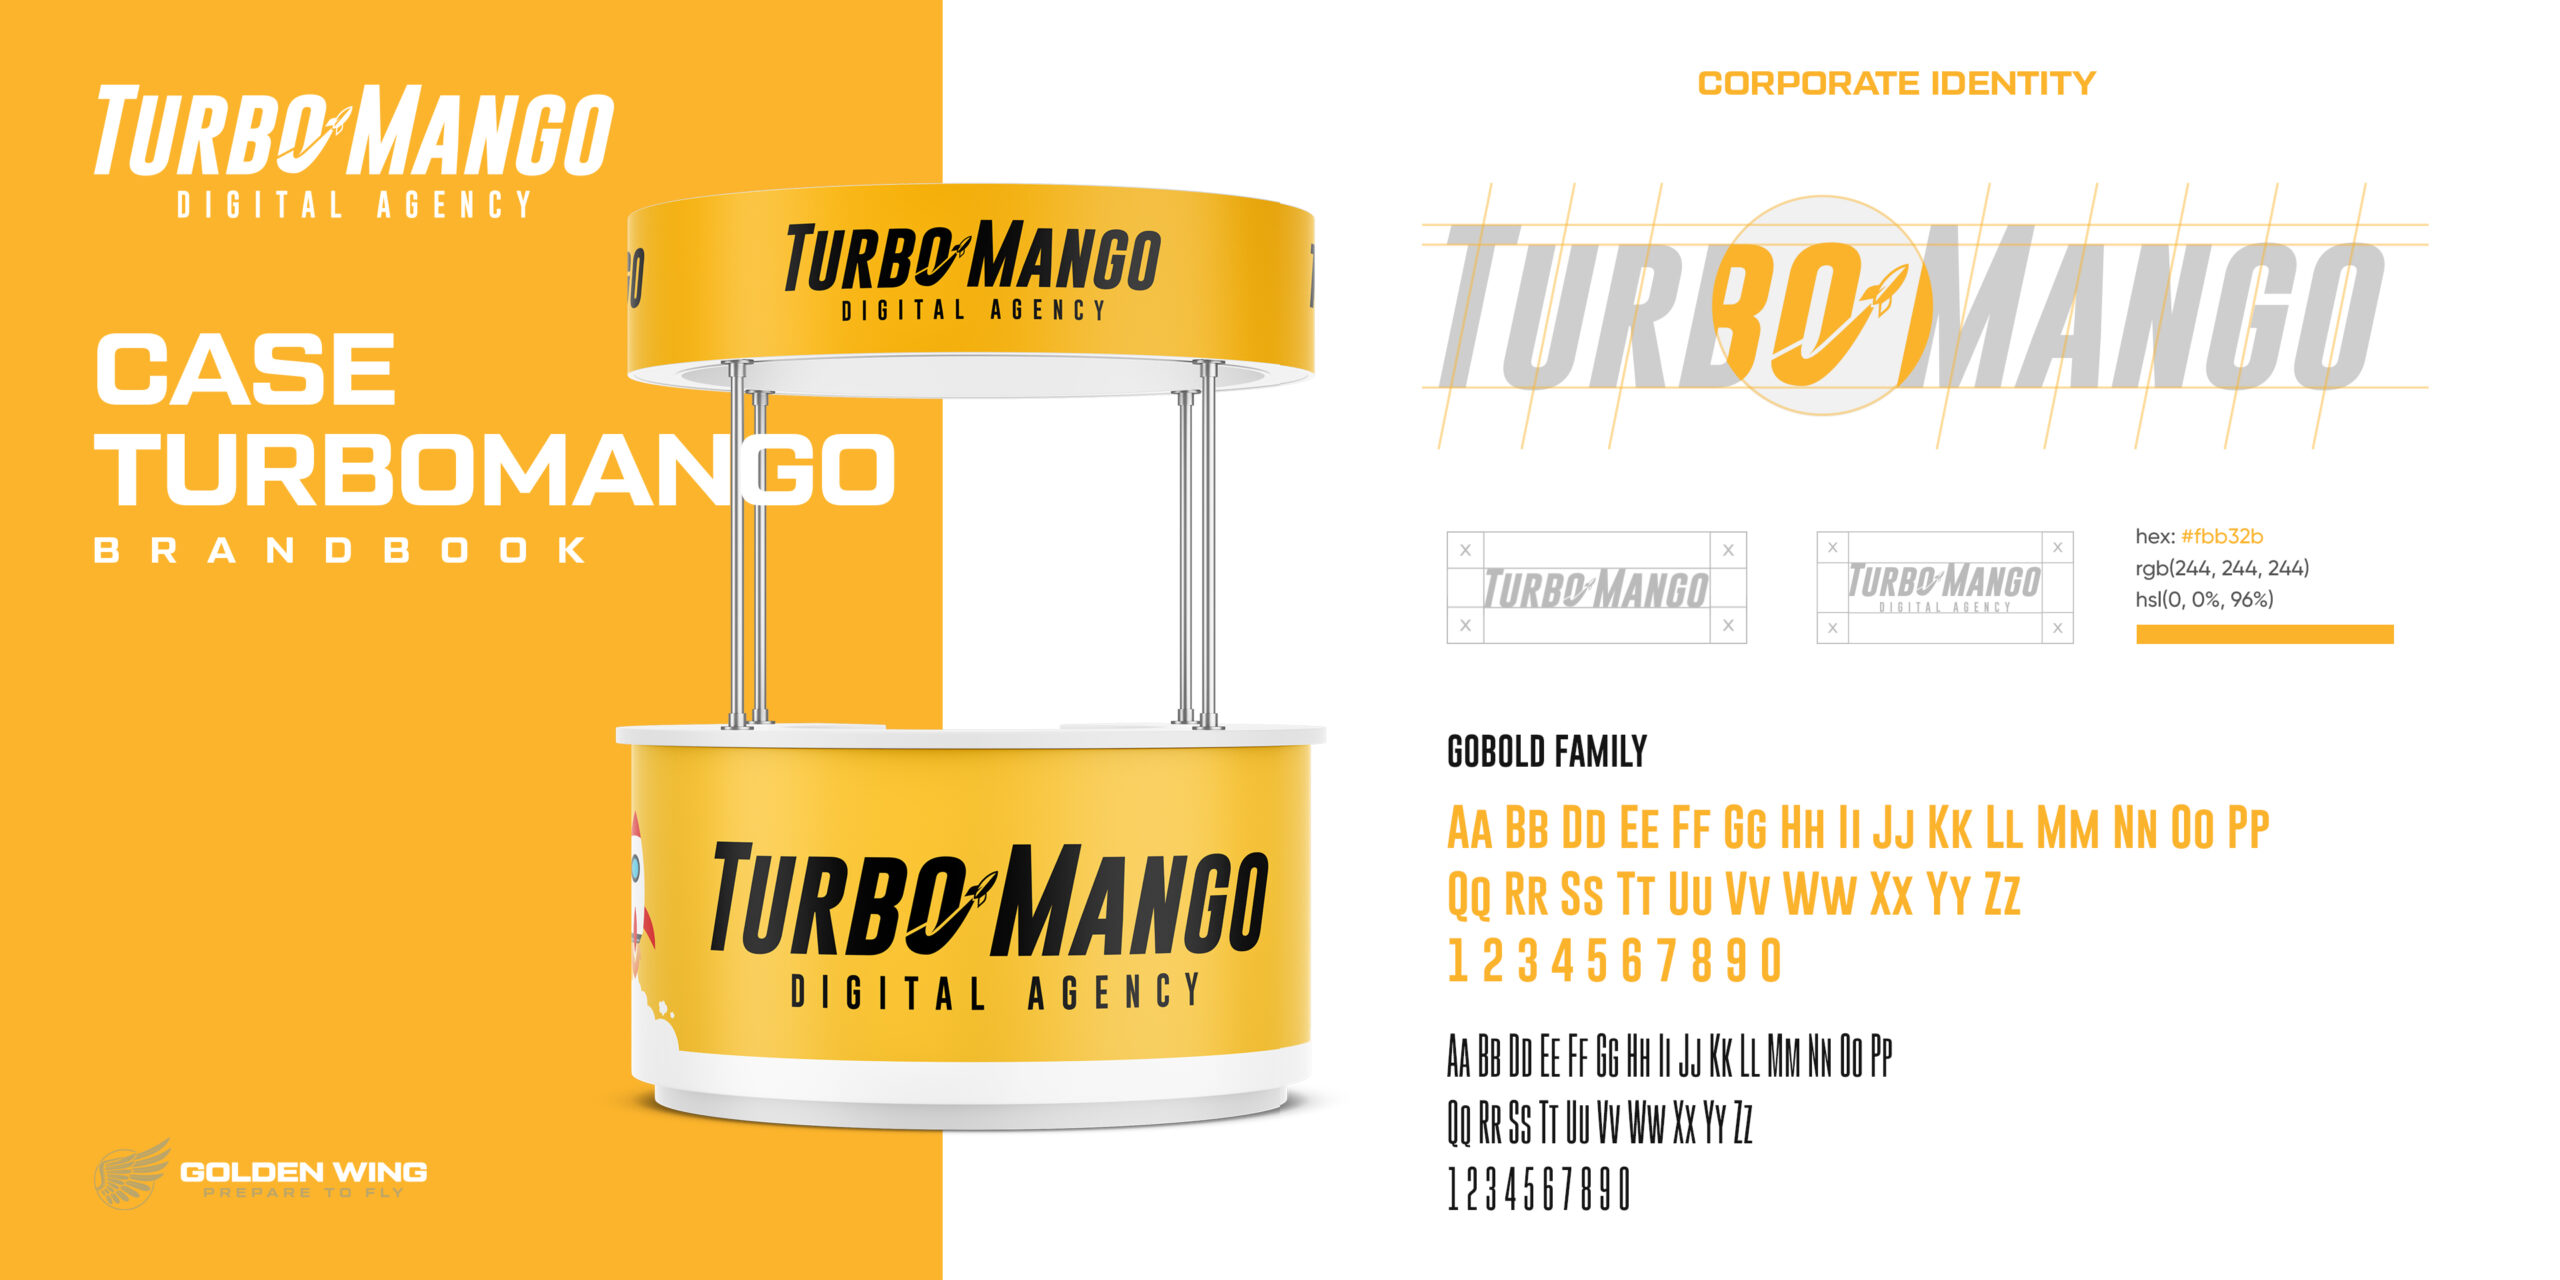 TurboMango Digital Agency Corporate Identity inklusive Logo-Design, Schriftfamilien-Spezifikationen und Messestand, der kohärente Branding-Elemente zeigt.